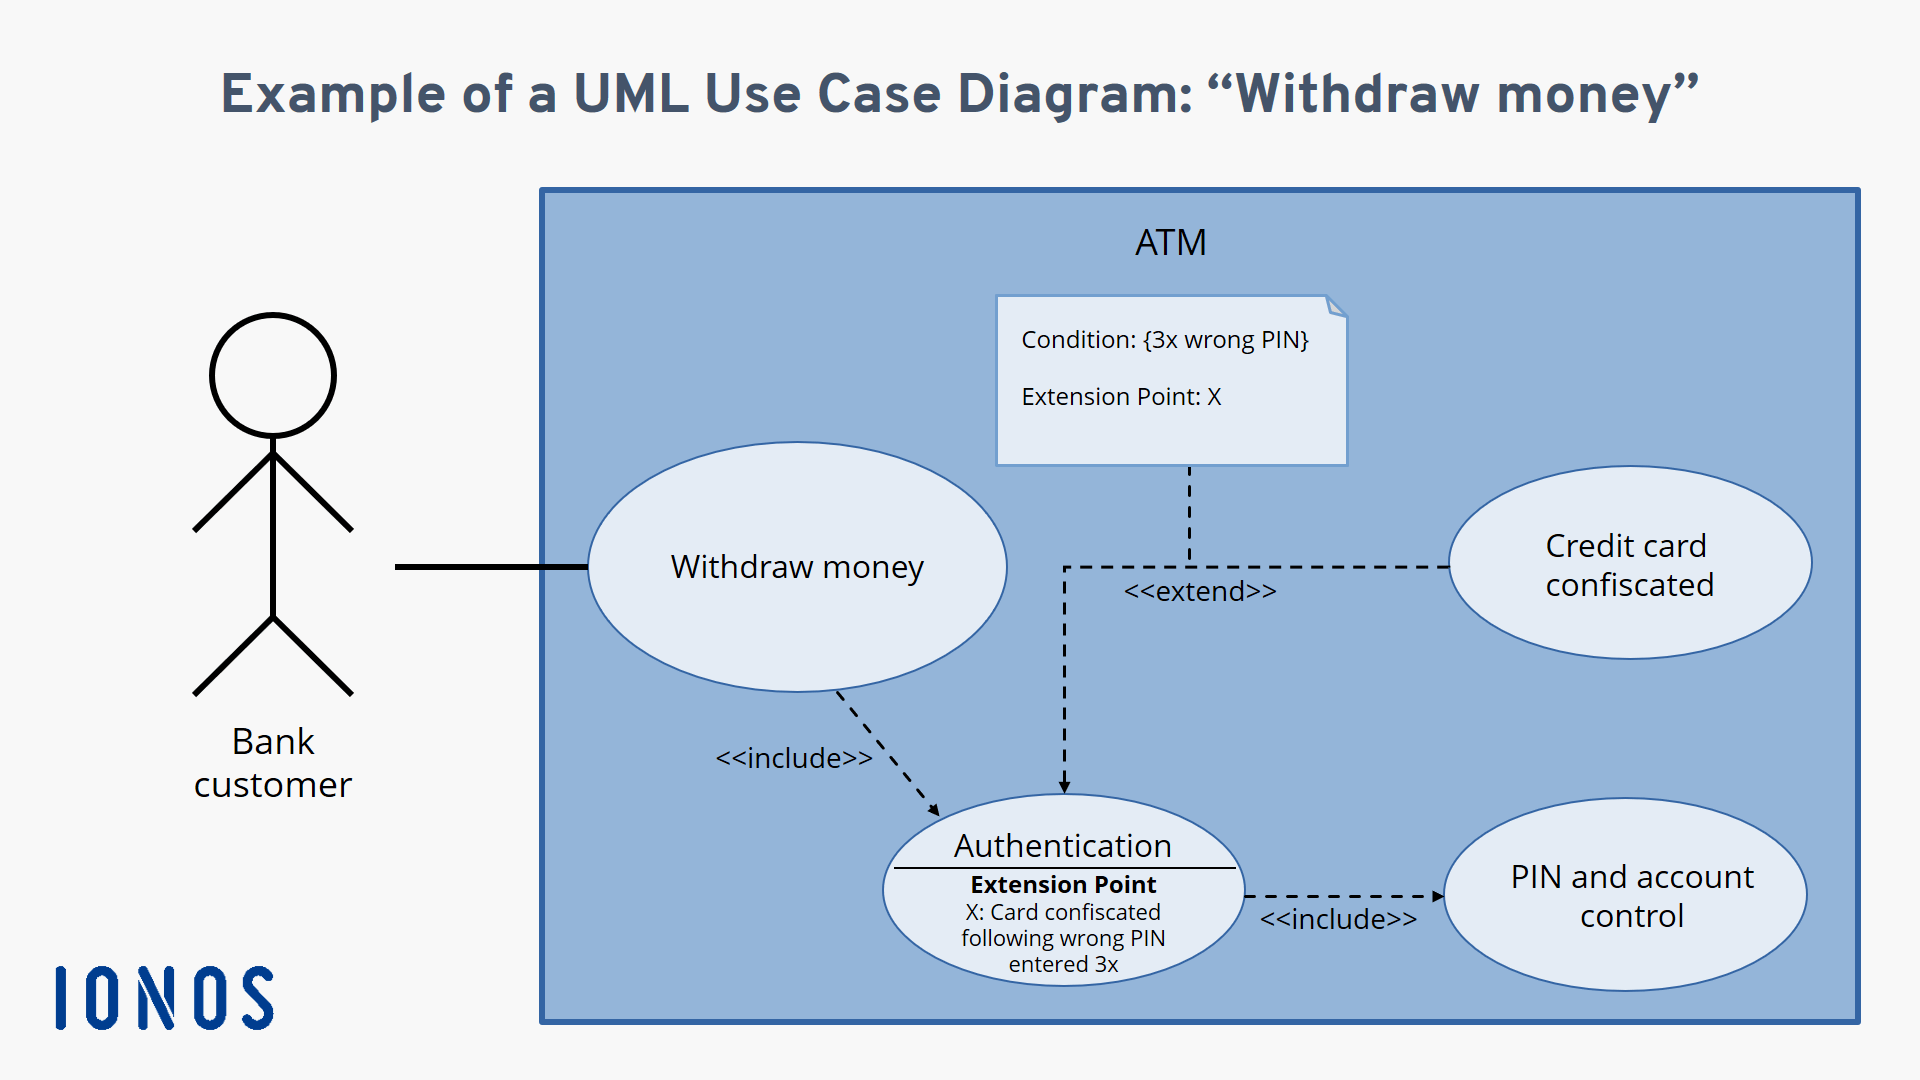 Tutorial sobre Casos de Uso y UML desde cero (con include, extend y  ejemplos!) 